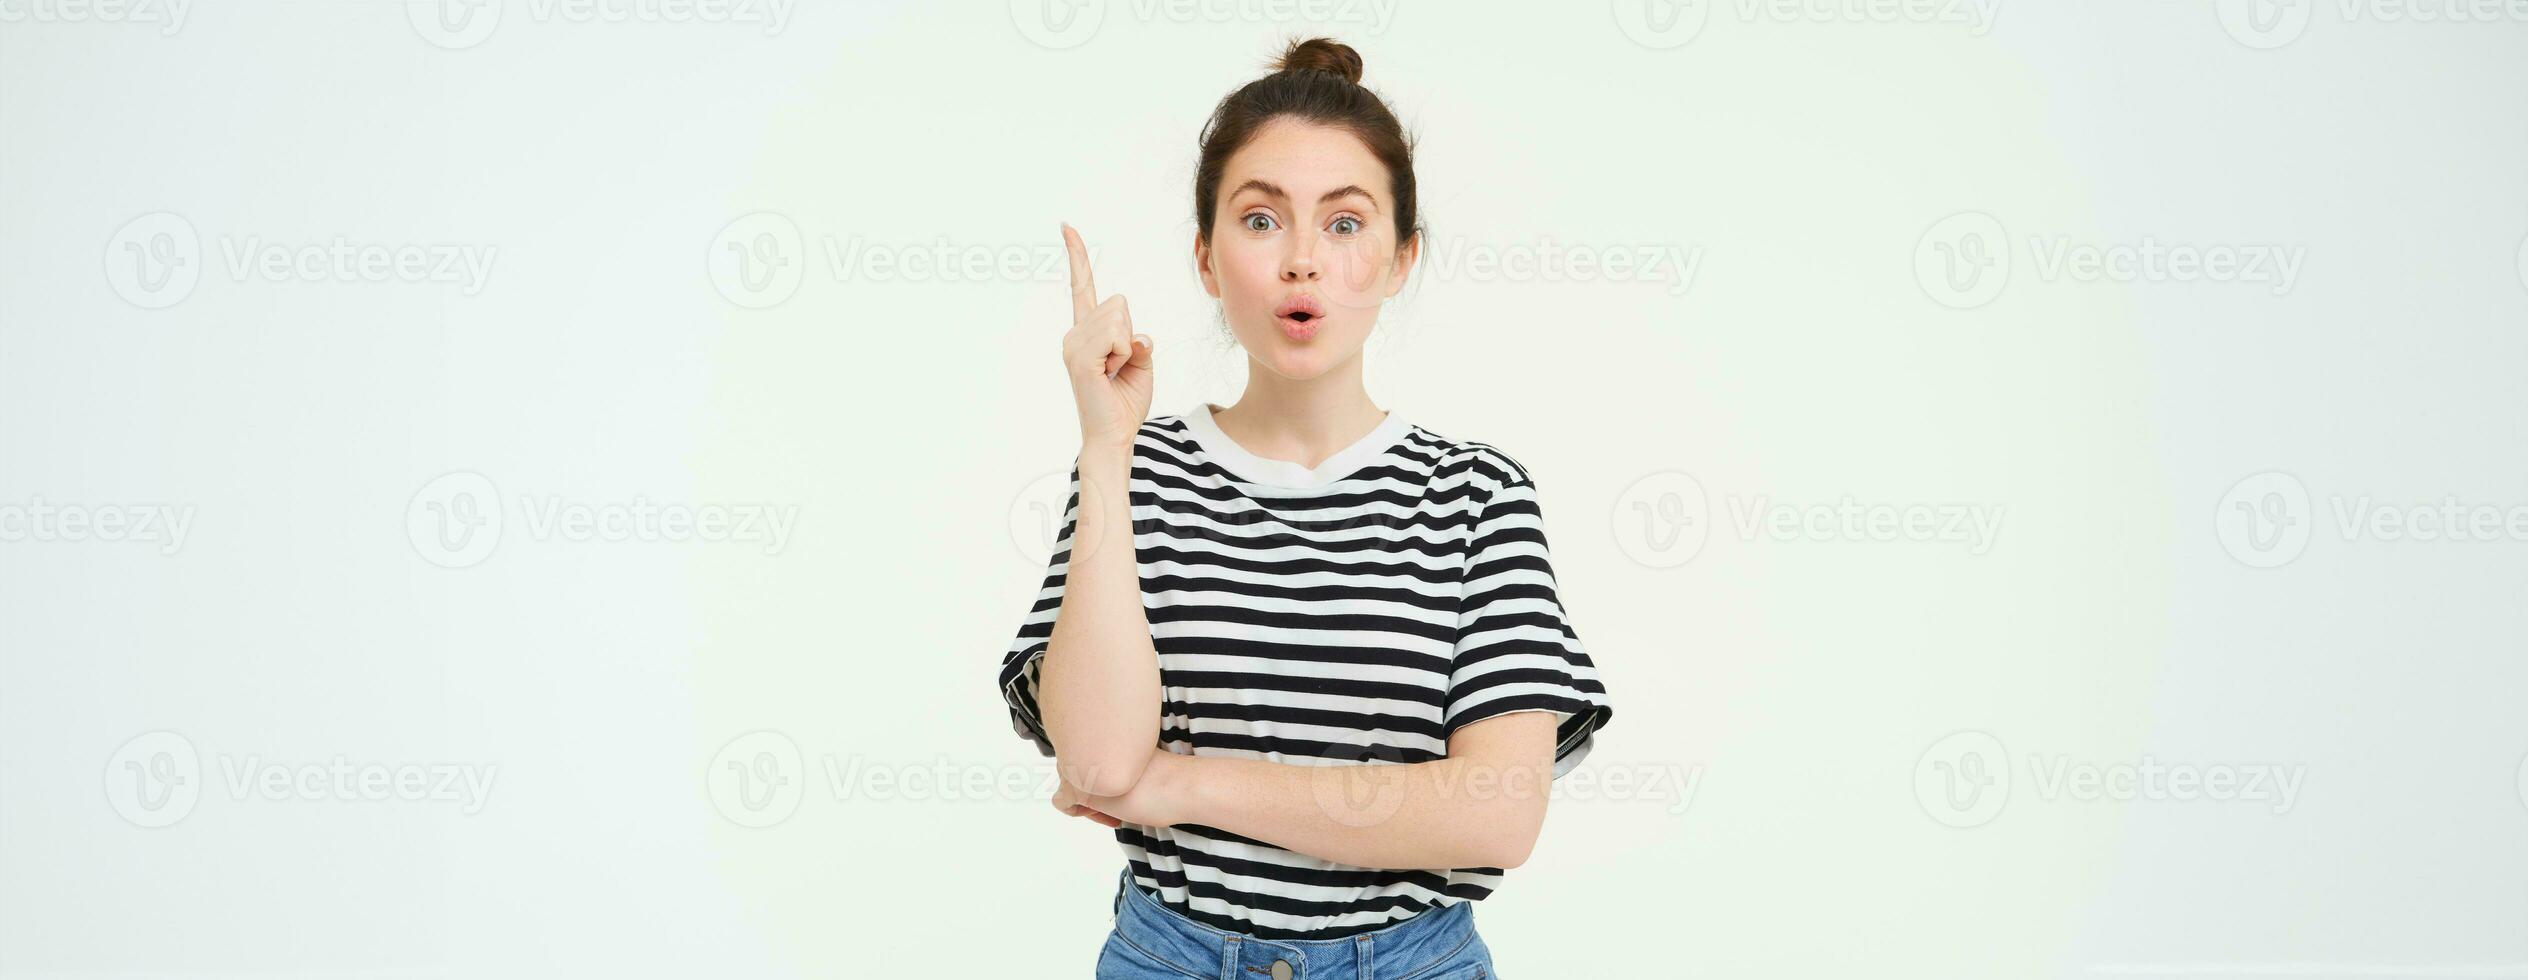 flicka har ett aning. ung kvinna med en lösning, höjning henne finger, föreslår något, står över vit bakgrund foto